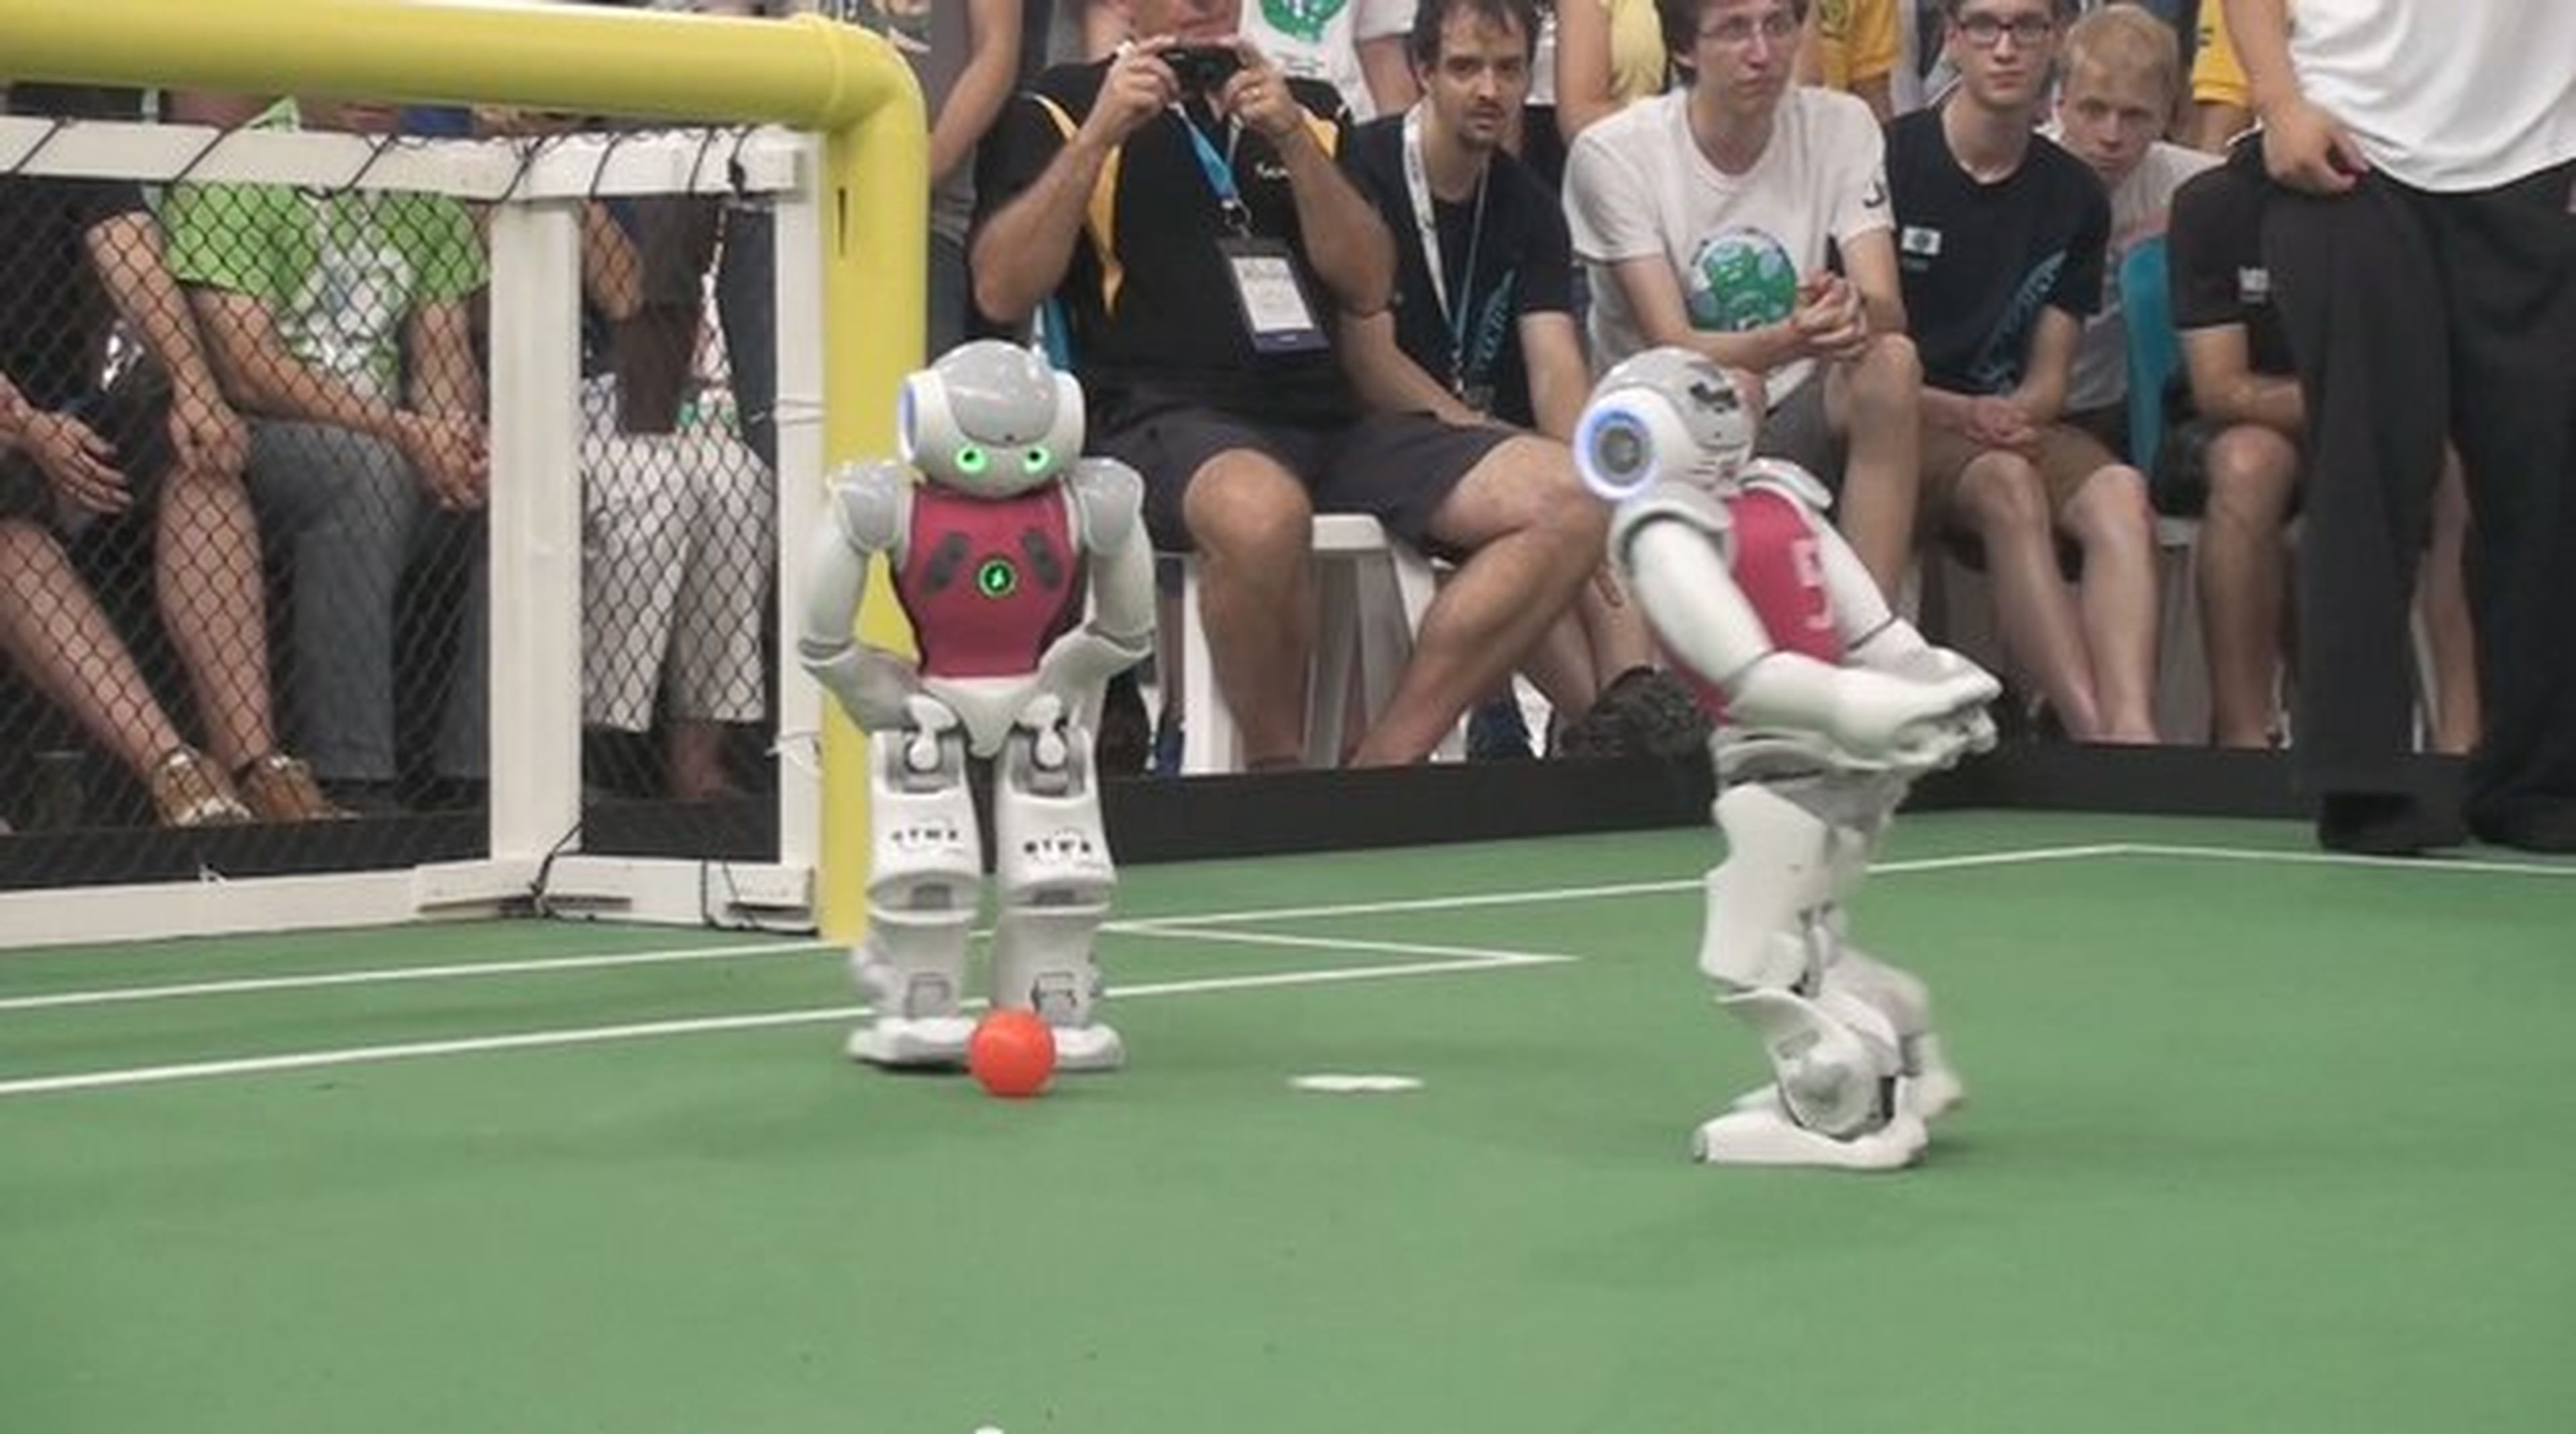 RoboCup 2014